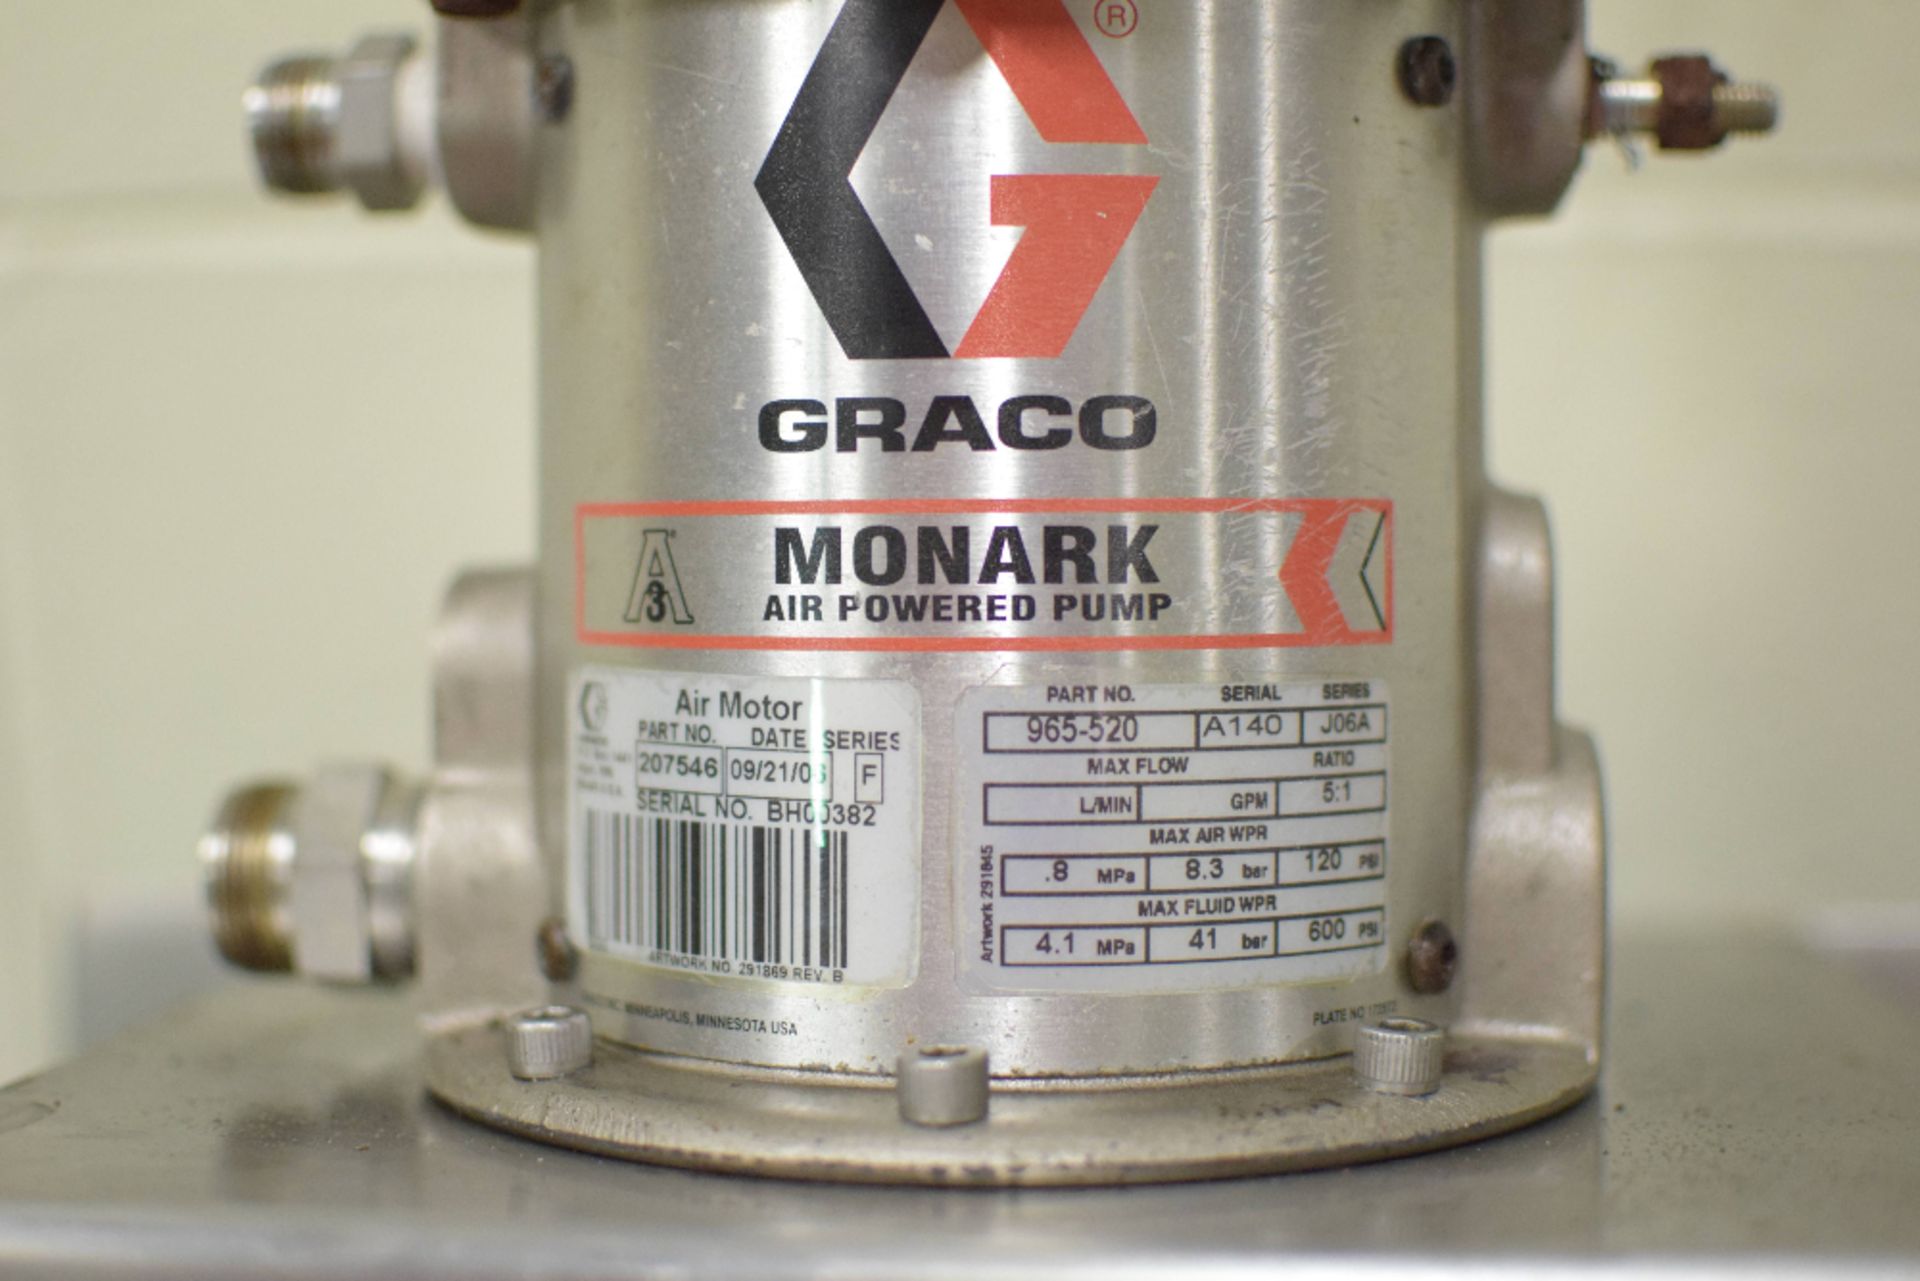 Graco Monark Pneumatic Pump Skid - Image 2 of 2